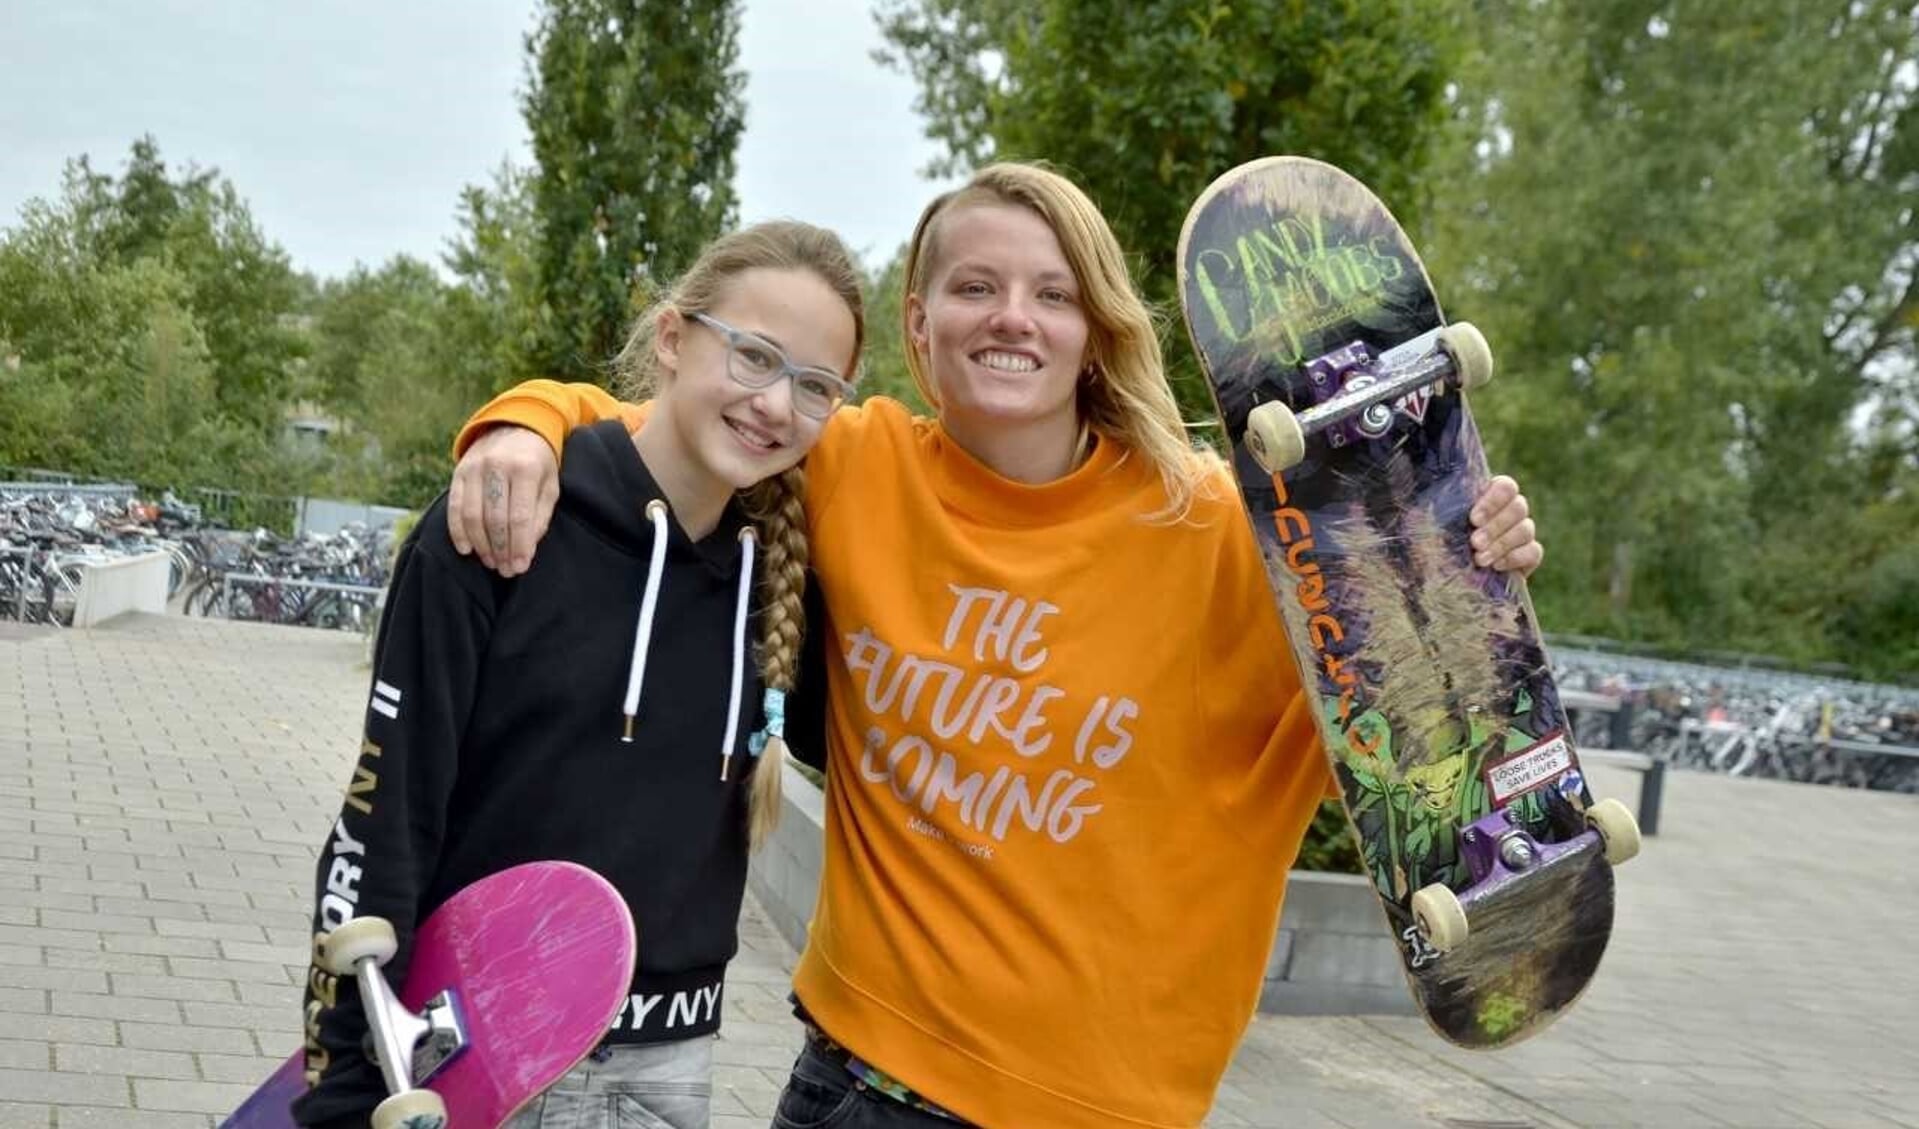 Brugklasser Yasmin met de Nederlands kampioene skateboarden Candy Jacobs op het schoolplein.